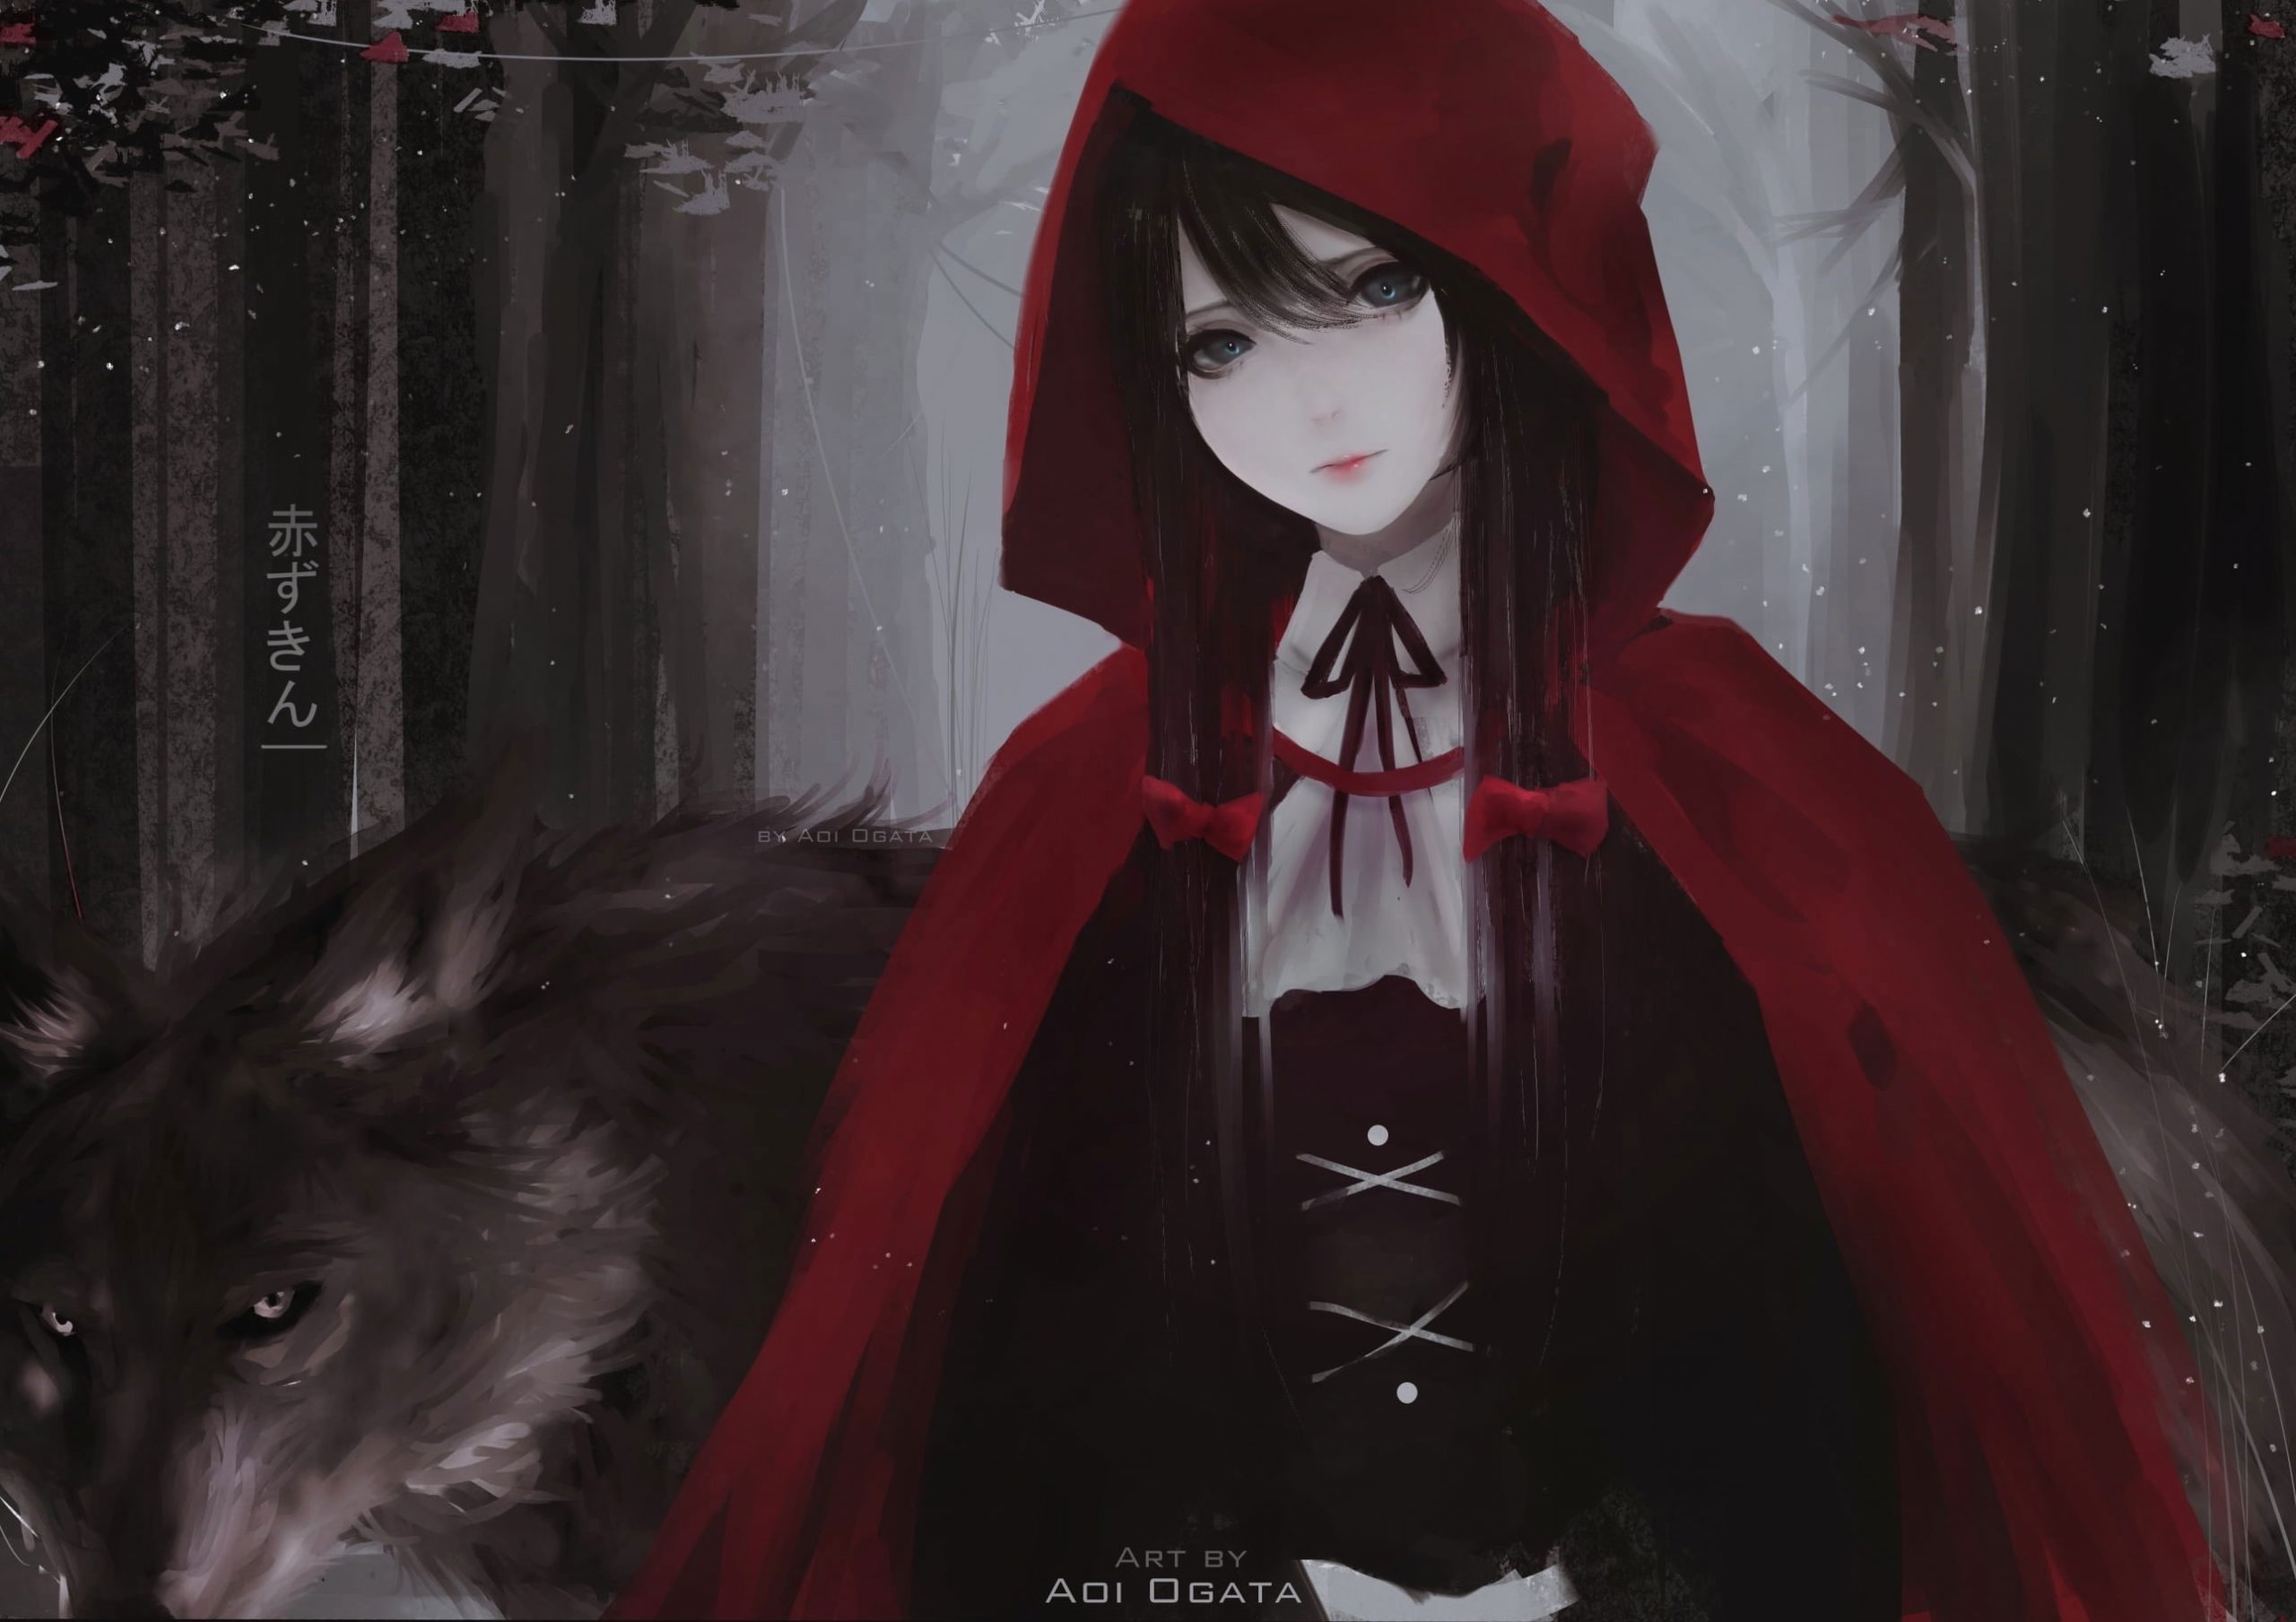 Wallpaper Aoi ogata Little Red Riding Hood, Red Hood, Women